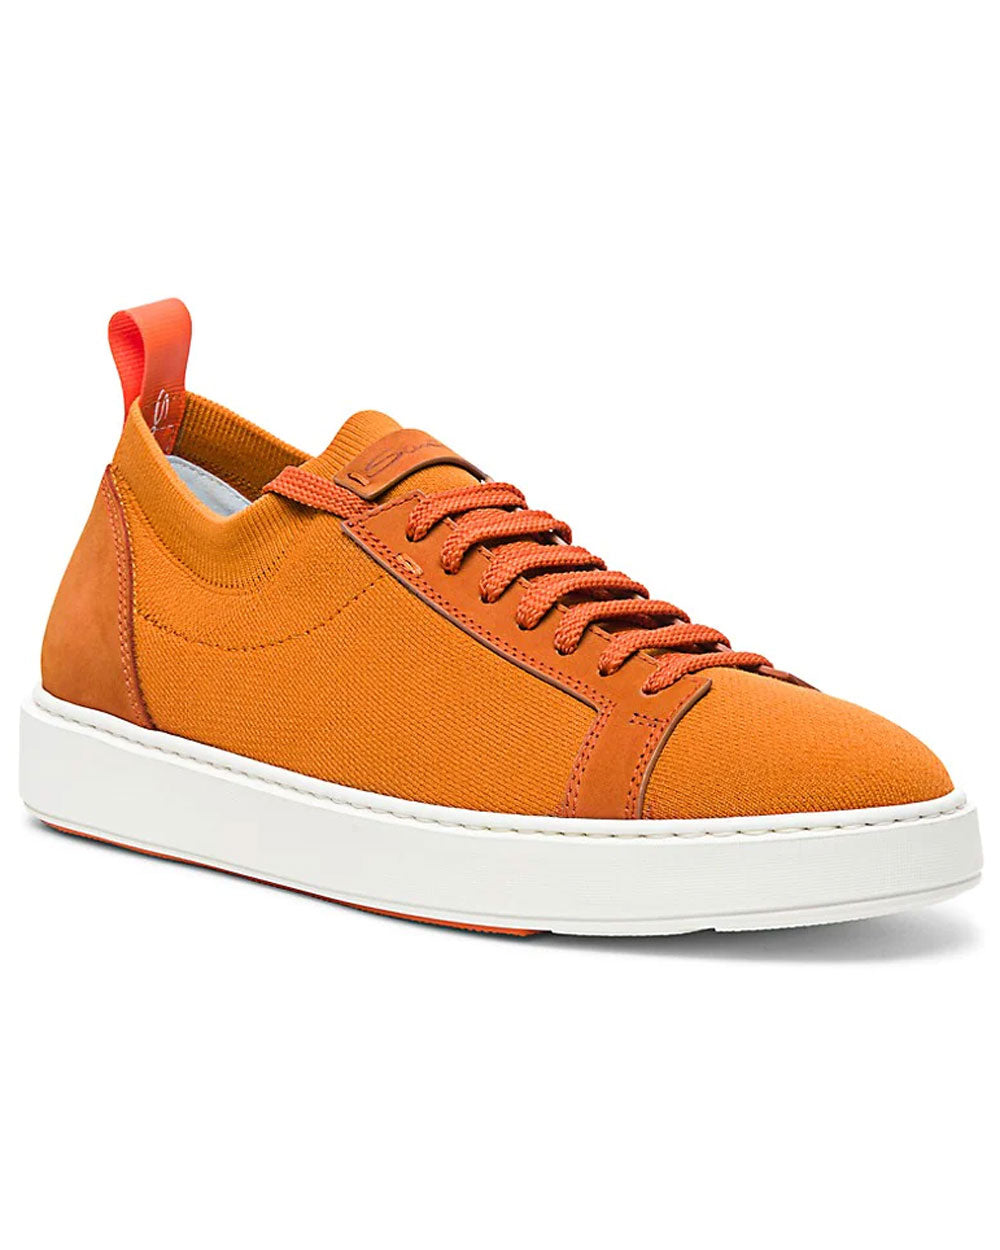 Daftest Sneaker in Orange